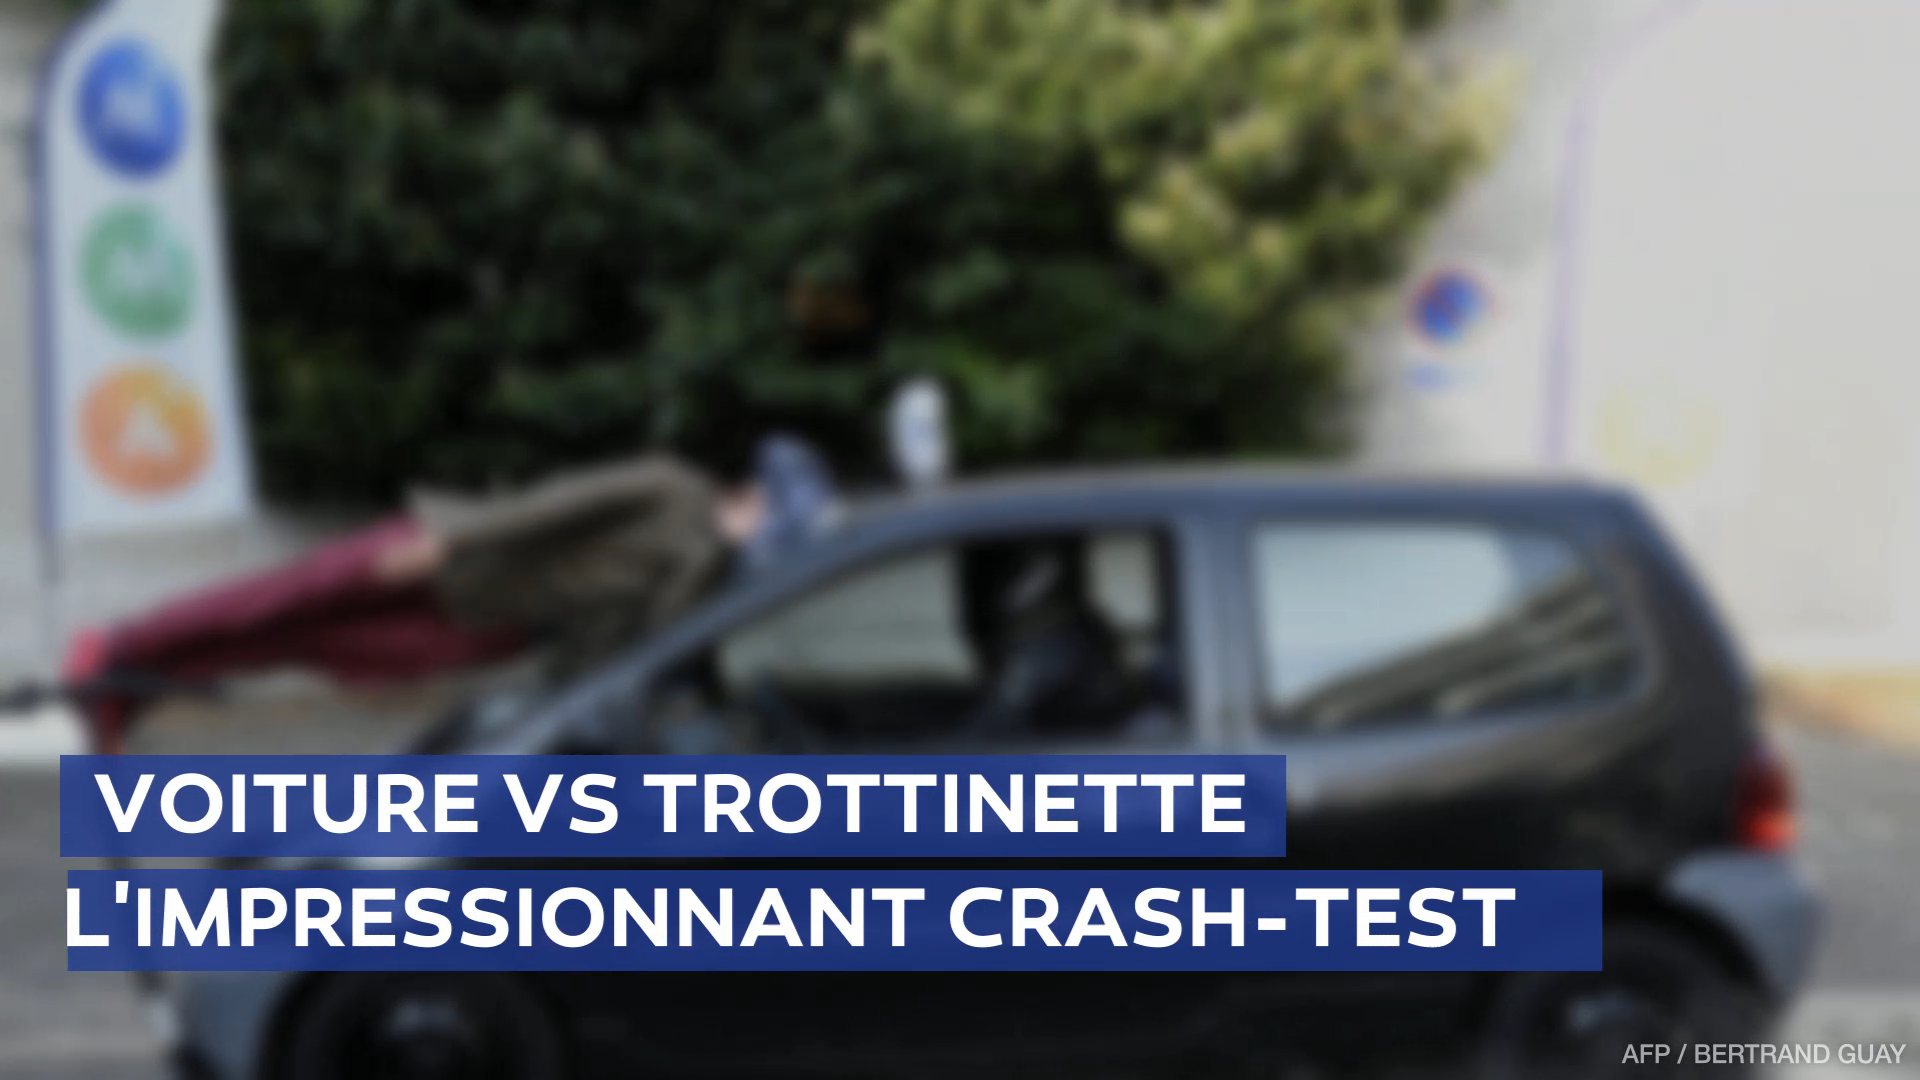 Un crash-test impressionnant entre une trottinette électrique et une voiture pour alerter les usagers